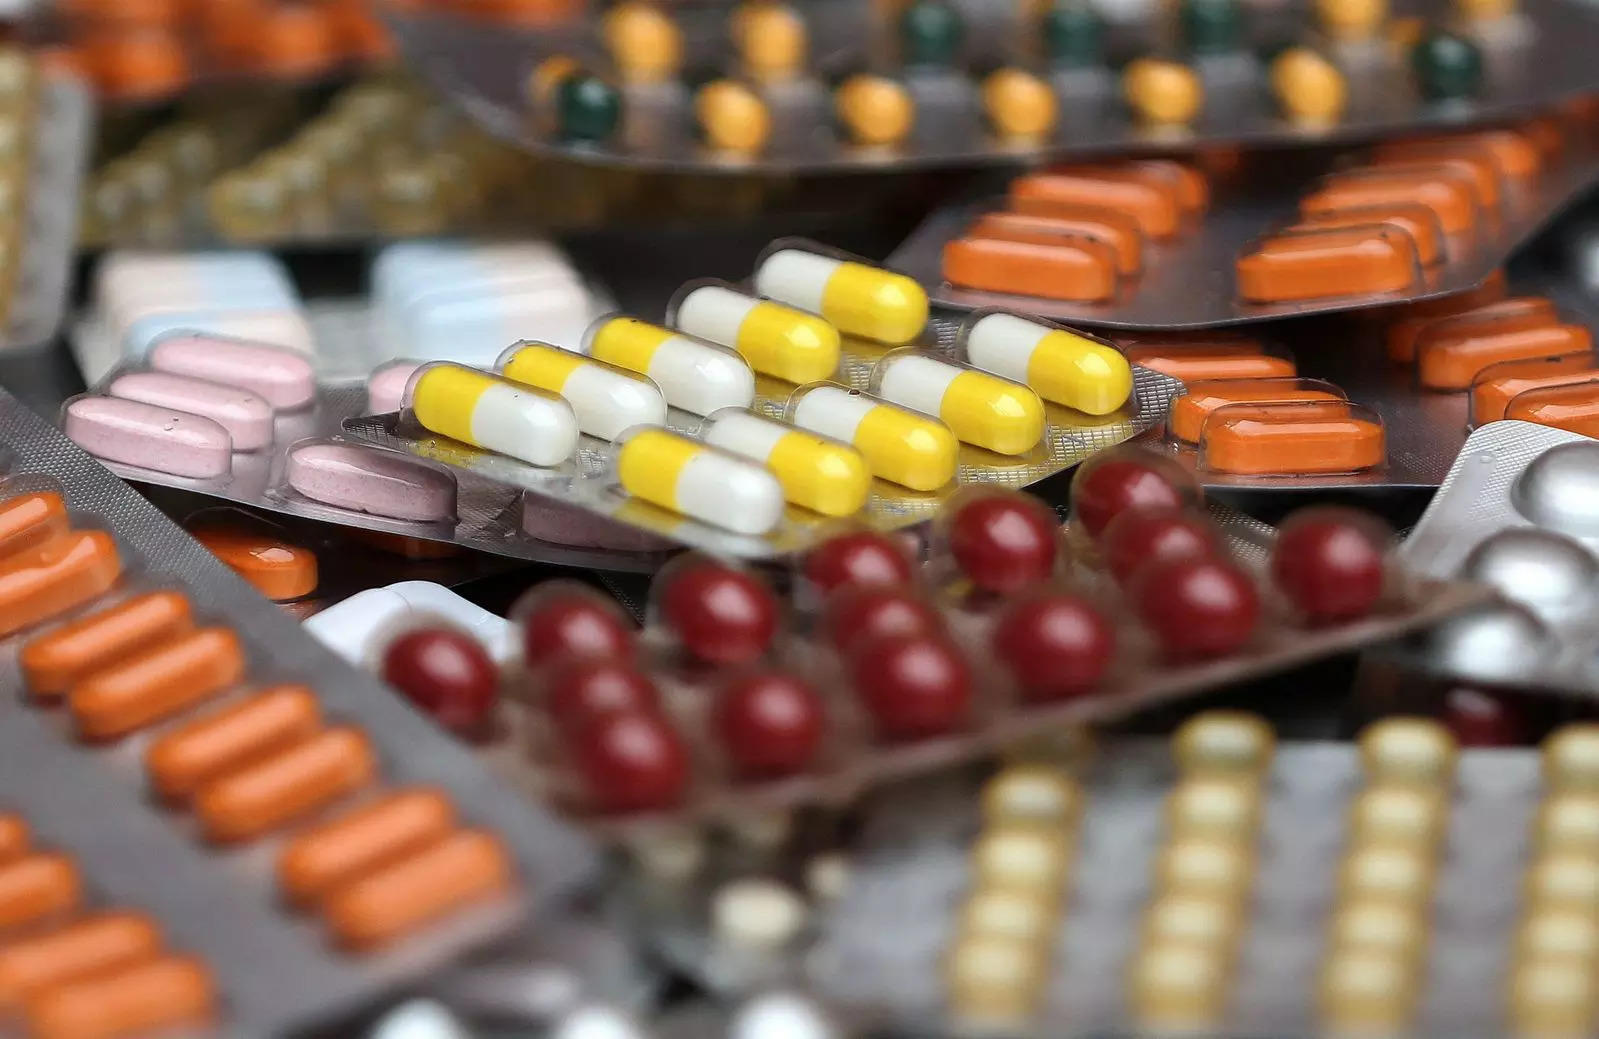 منداویا: دولت می خواهد بار انطباق بر بخش داروسازی را کاهش دهد